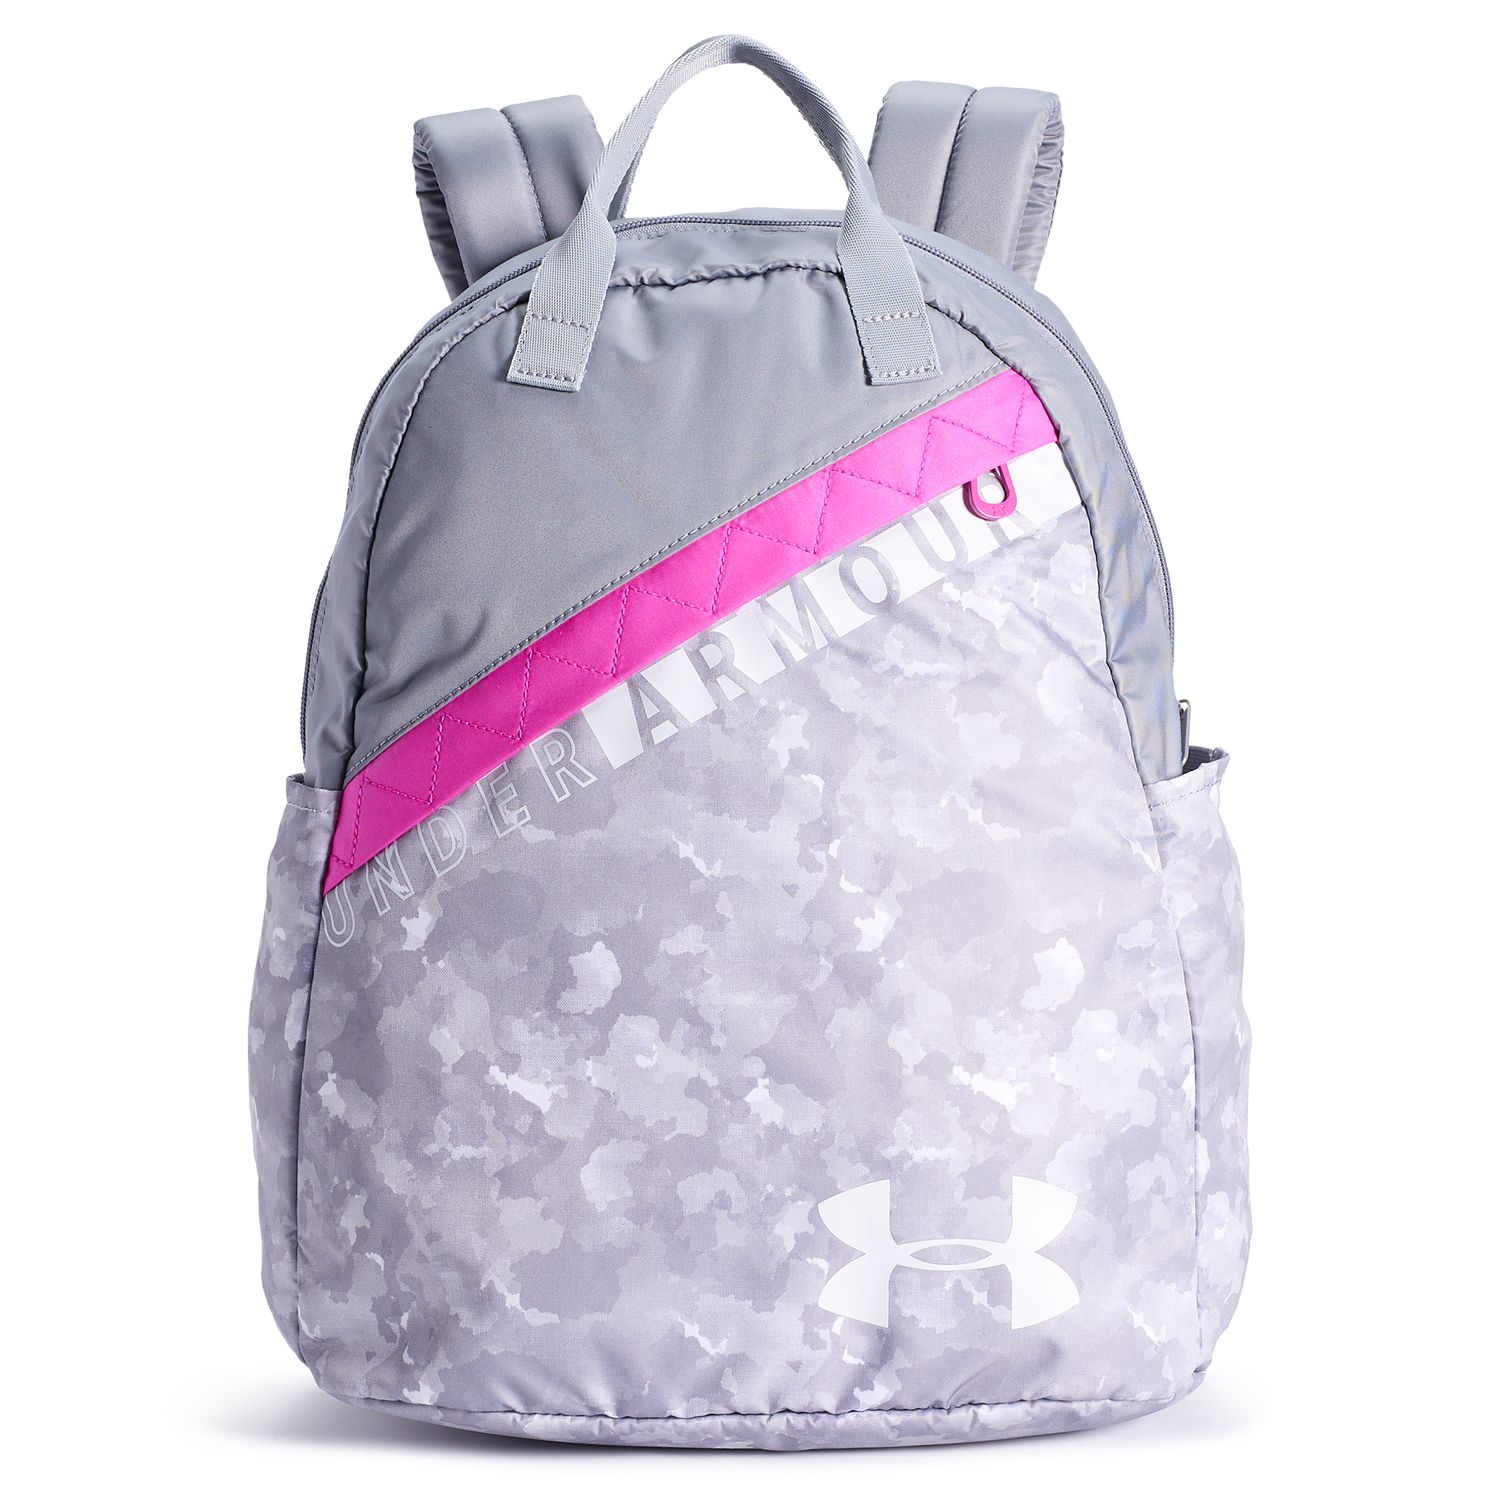 ua mesh backpack